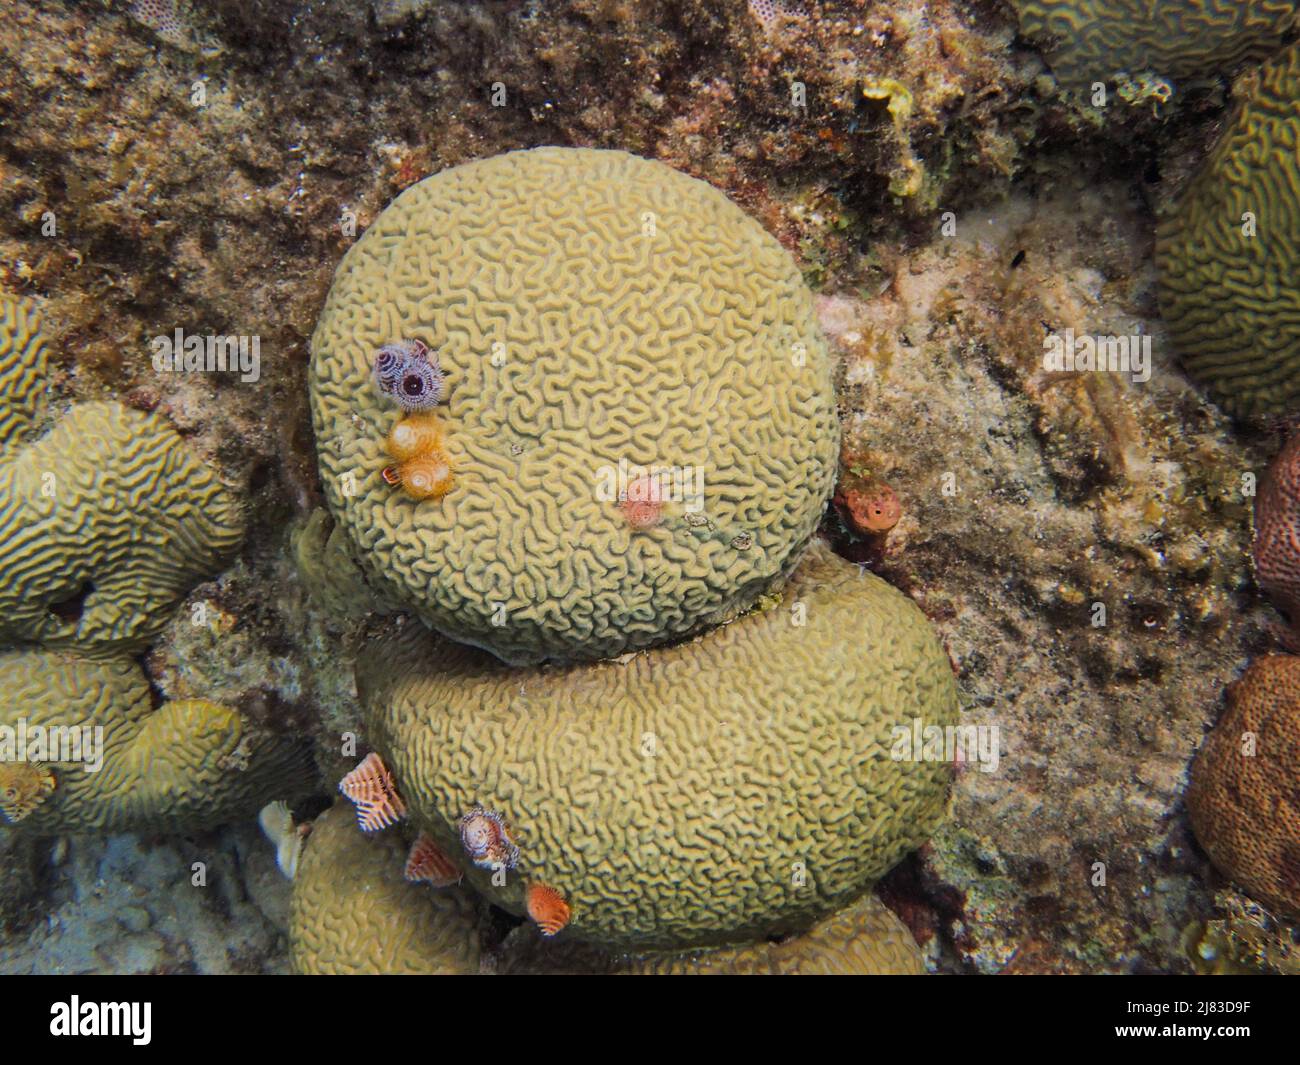 Los corales son invertebrados marinos dentro de la clase Anthozoa cnidarios. Suelen vivir en colonias compactas de muchos individuales idénticos Foto de stock